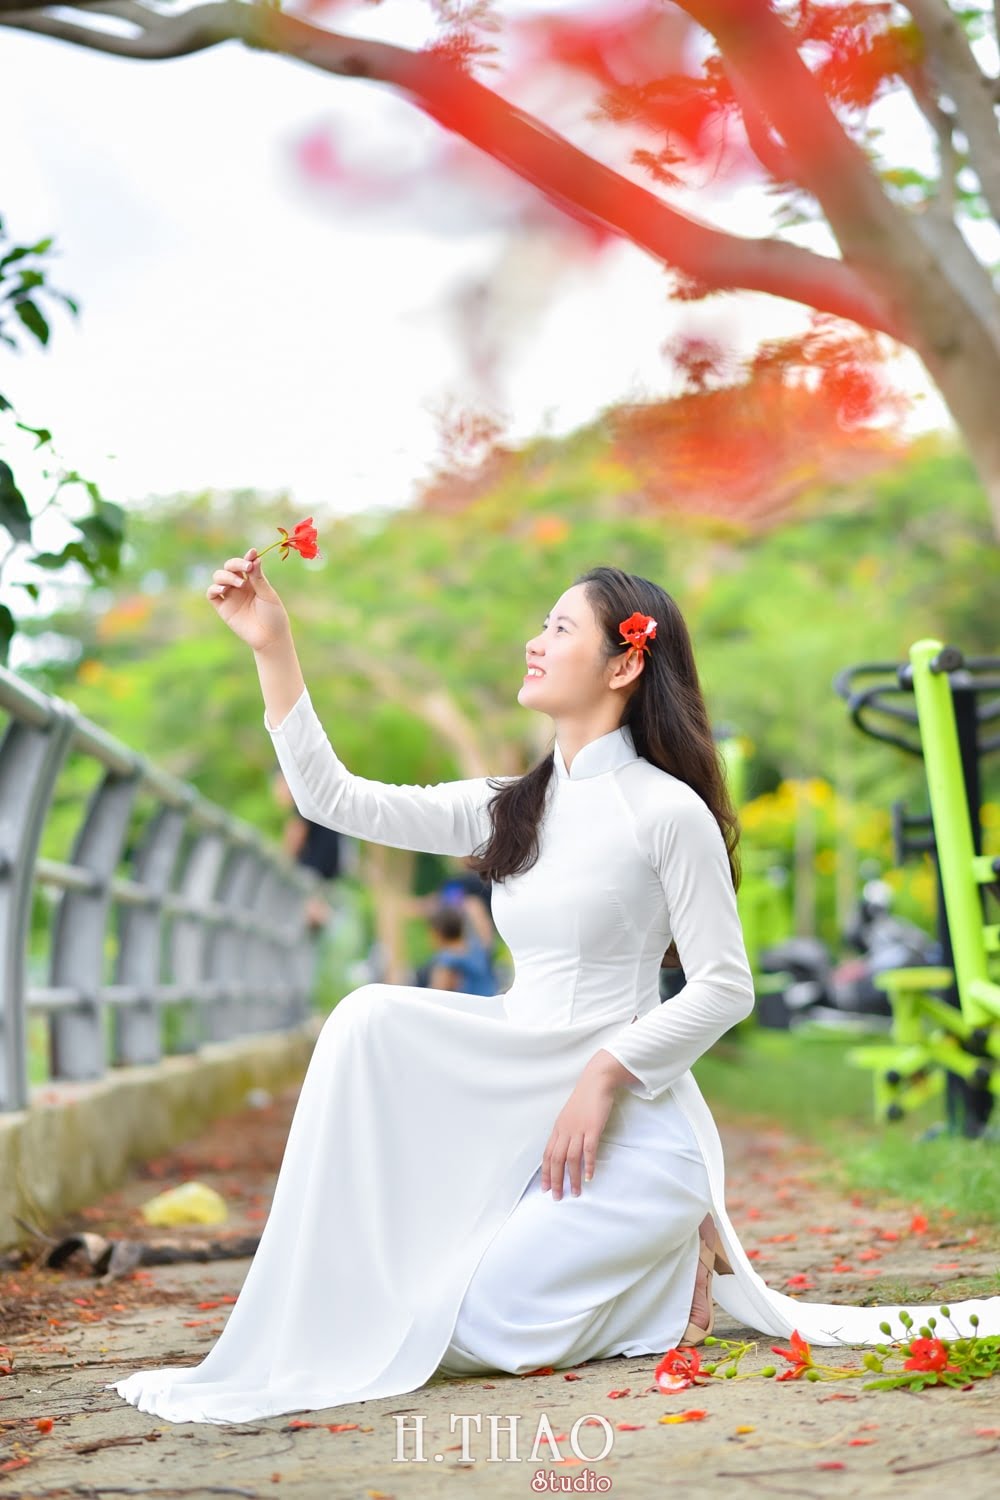 Anh ao dai hoa phuong 7 min - Bộ hình nữ sinh chụp với hoa phượng ở Sài Gòn tuyệt đẹp – HThao Studio